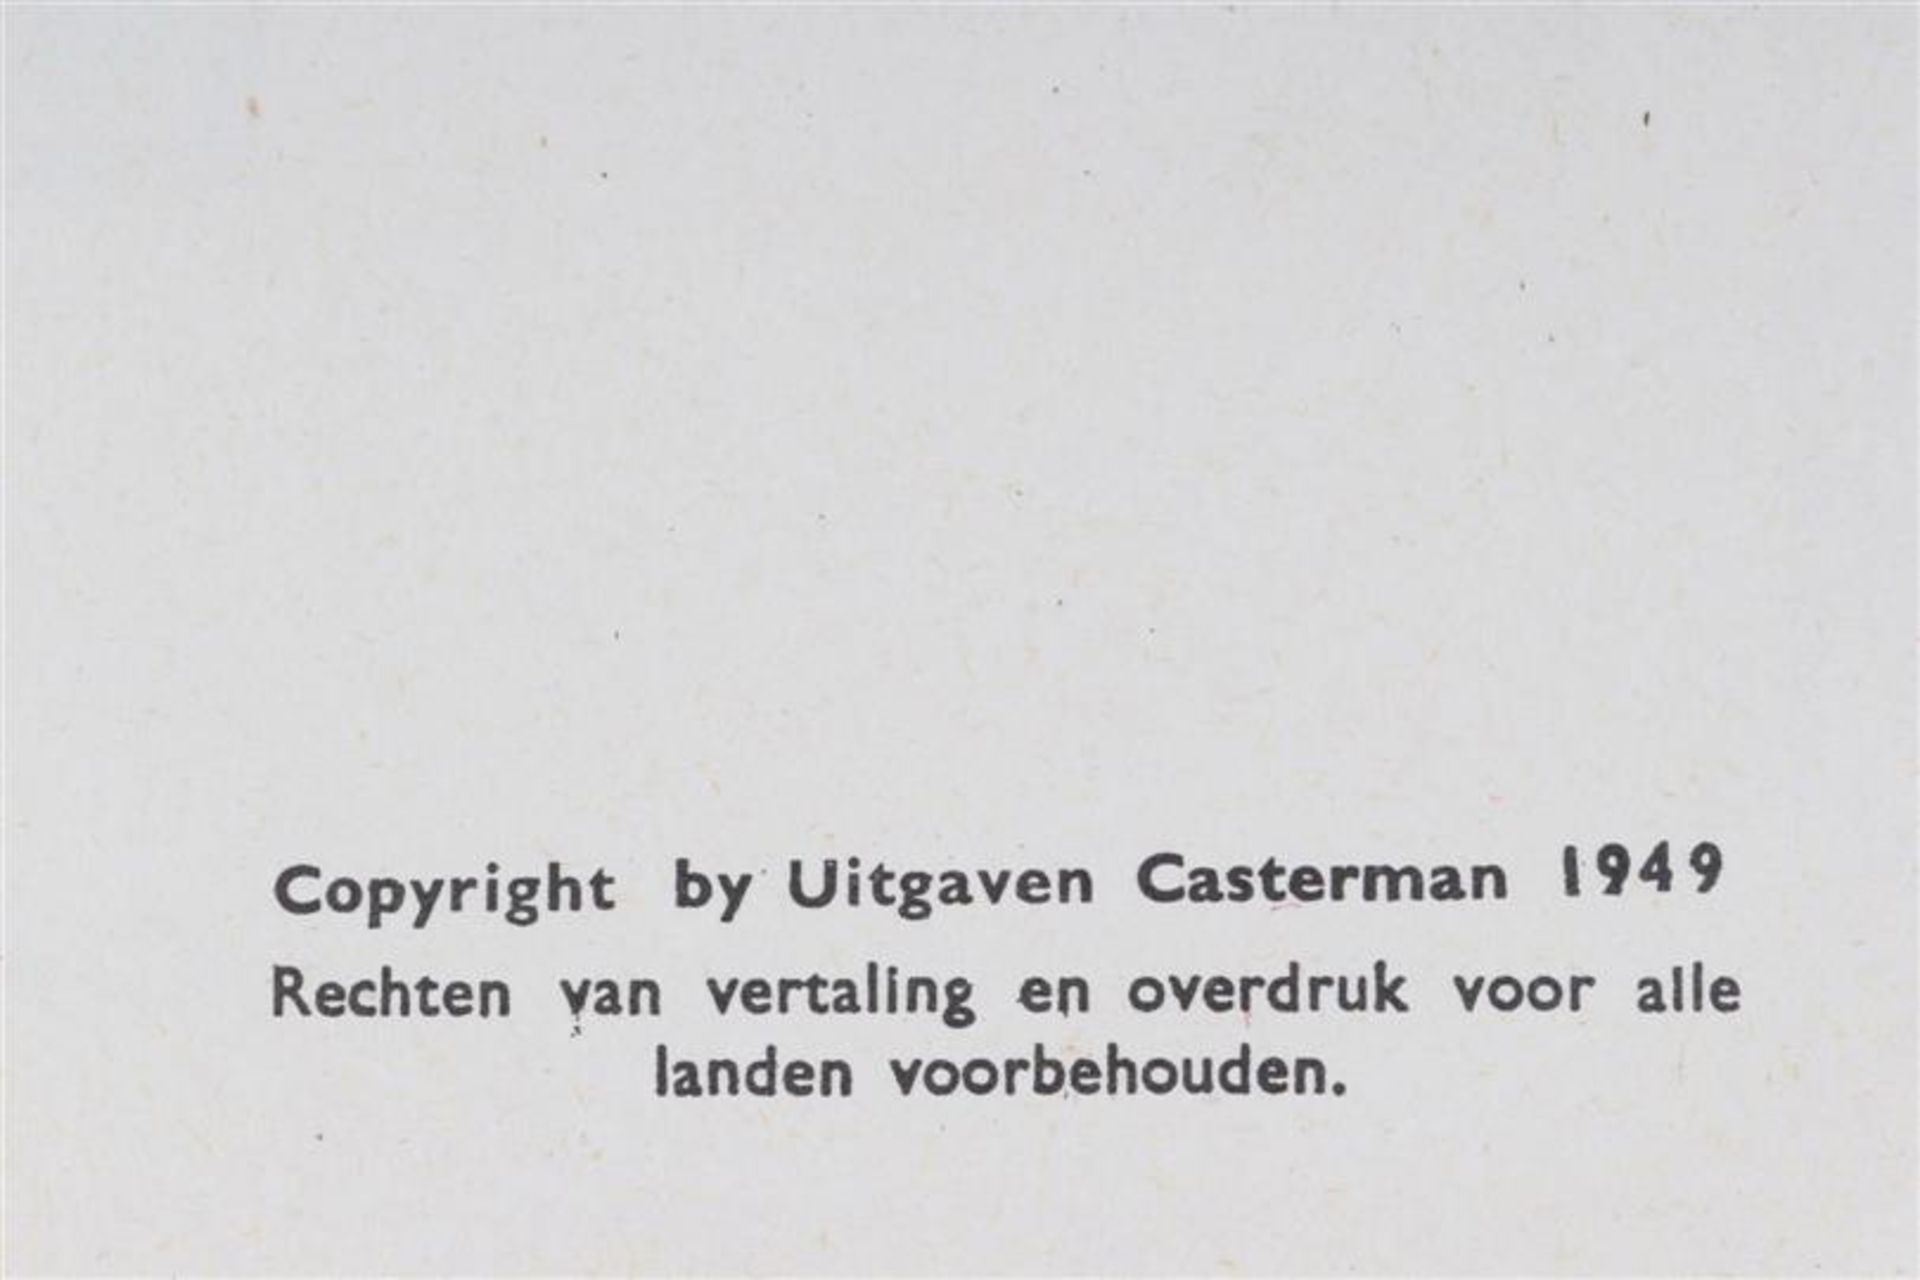 De avonturen van Kuifje, Hergé, uitgeverij Casterman, 7 hardcovers en drie softcovers. - Bild 14 aus 17